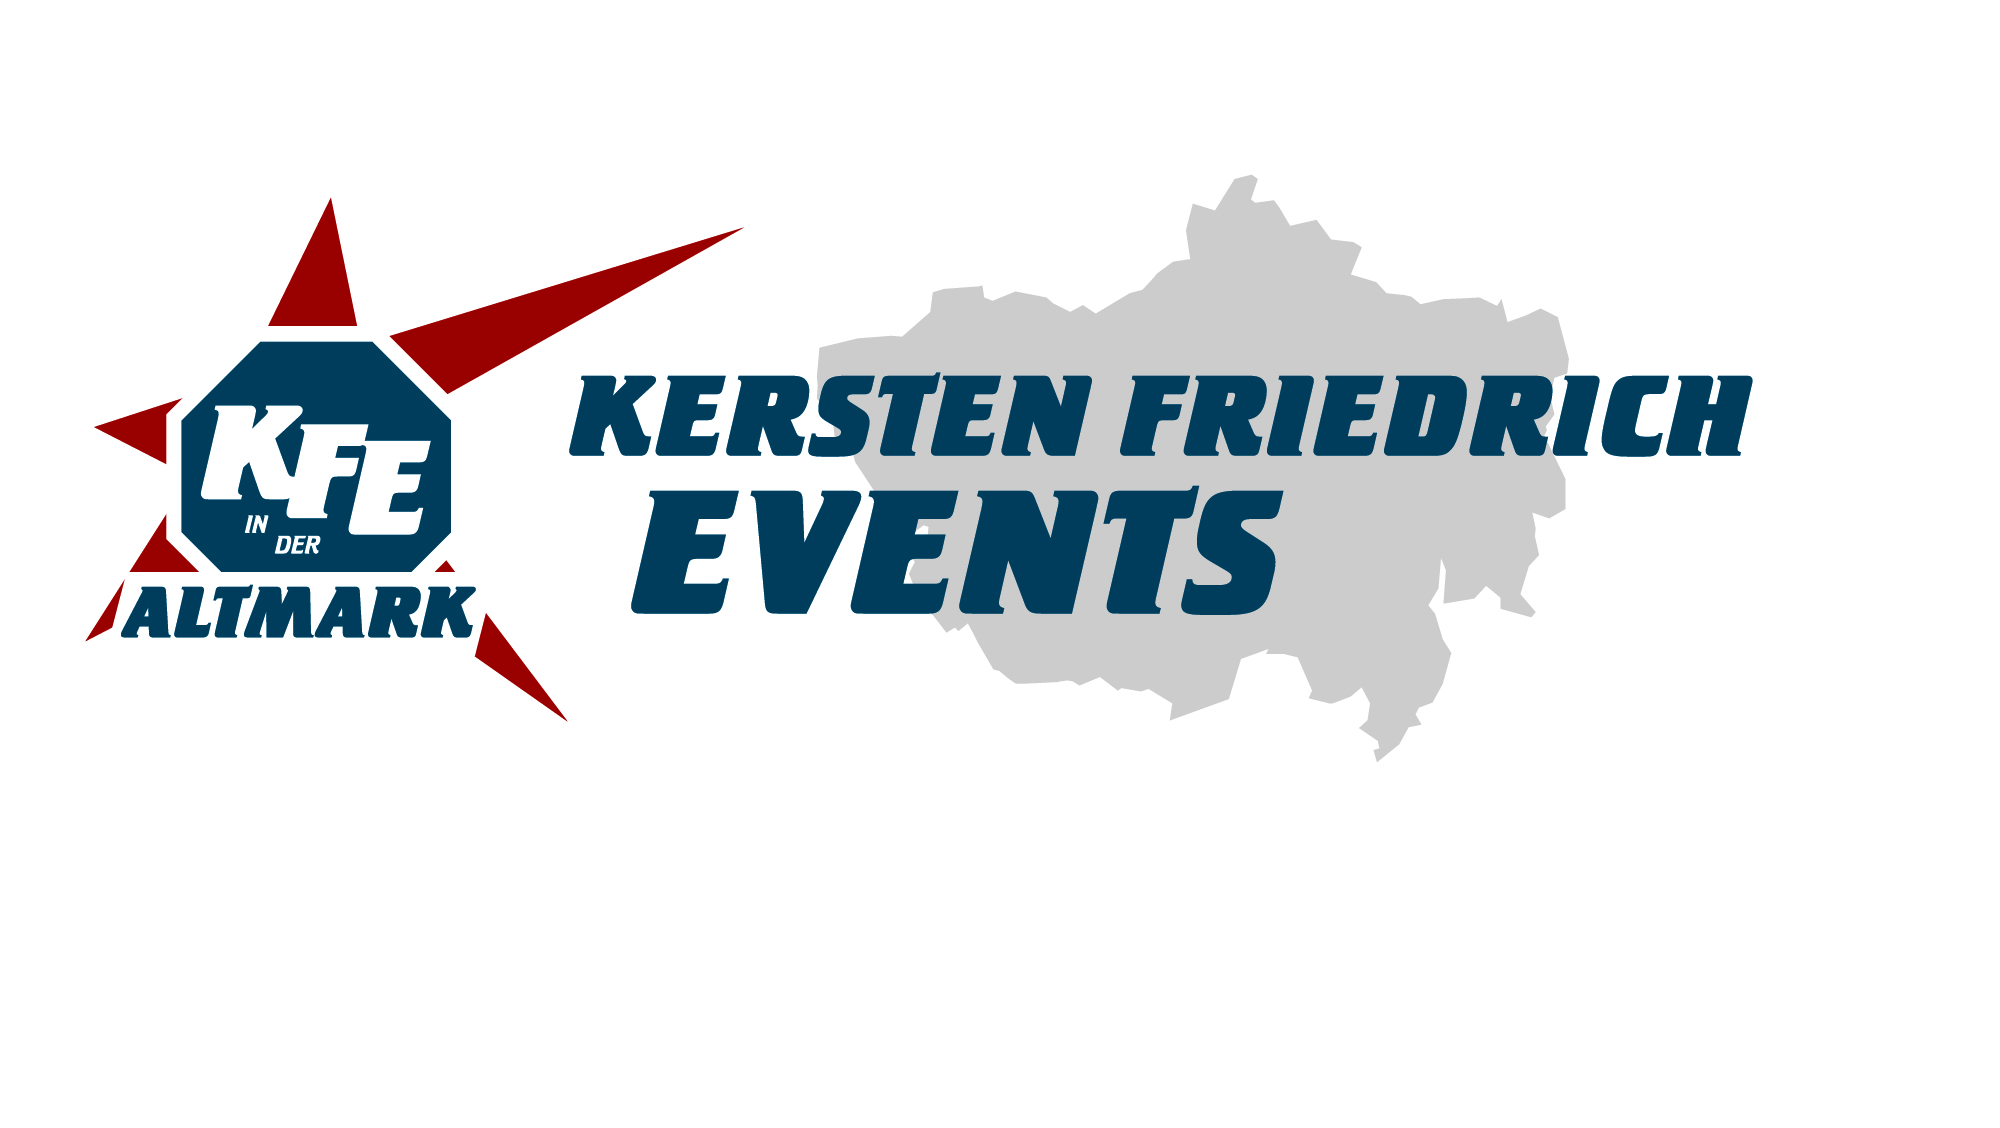 (c) Kersten-friedrich-events.com